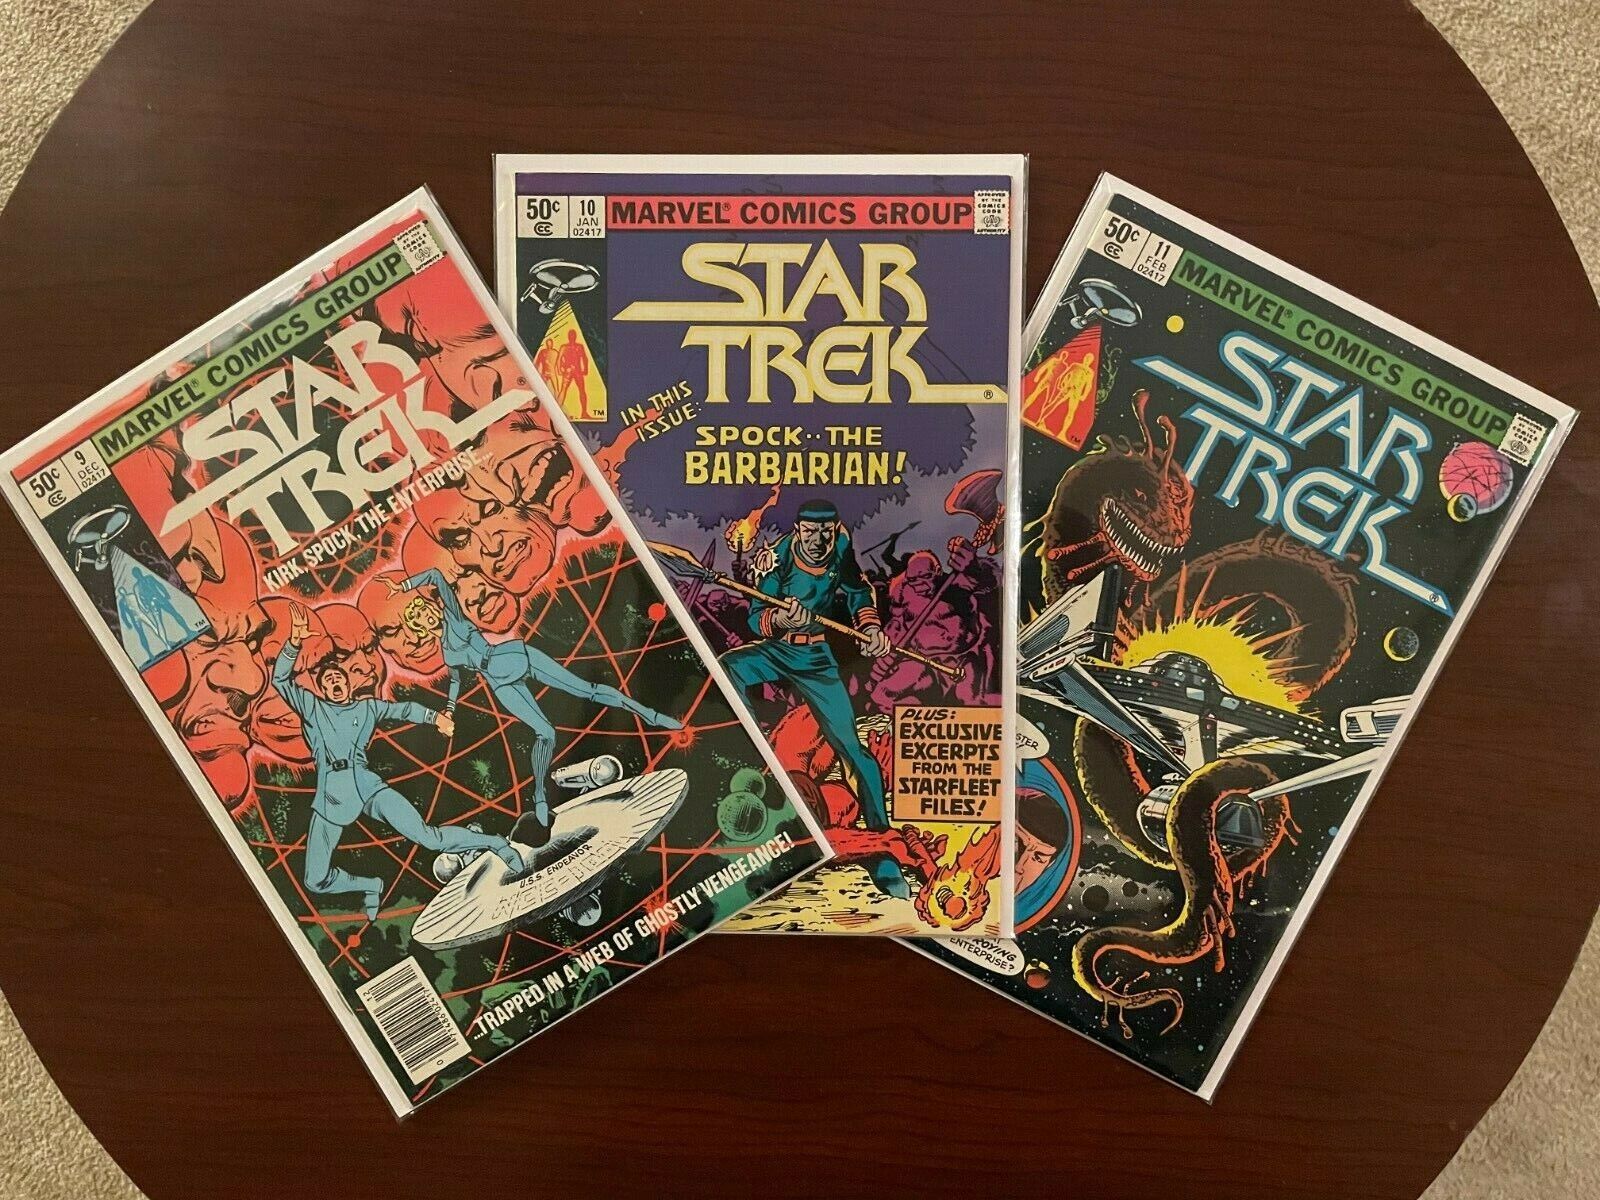 (lot of 3 Comics) Star Trek #9 #10 #11 (Marvel 1980) TOS Frank Miller 8.0 VF